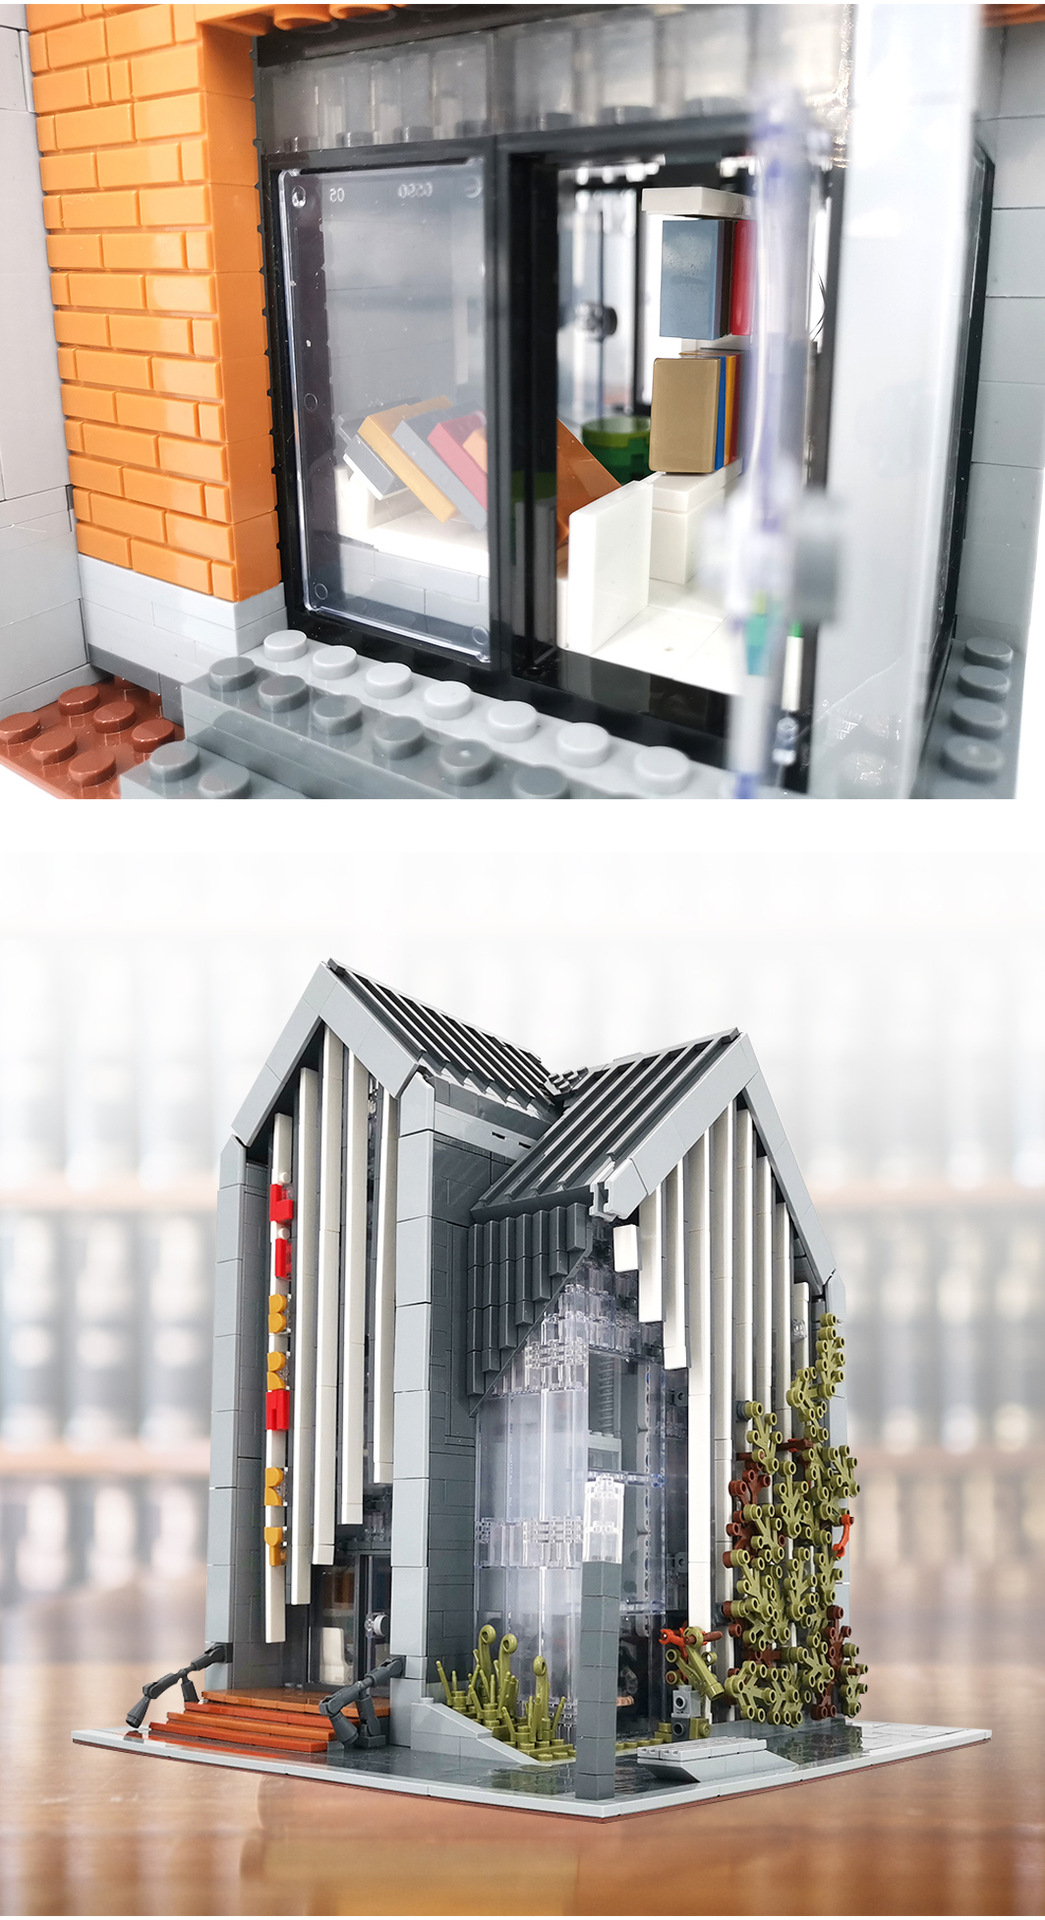 MORK 011001 Conjunto de juguetes de ladrillos de construcción modelo de biblioteca moderna